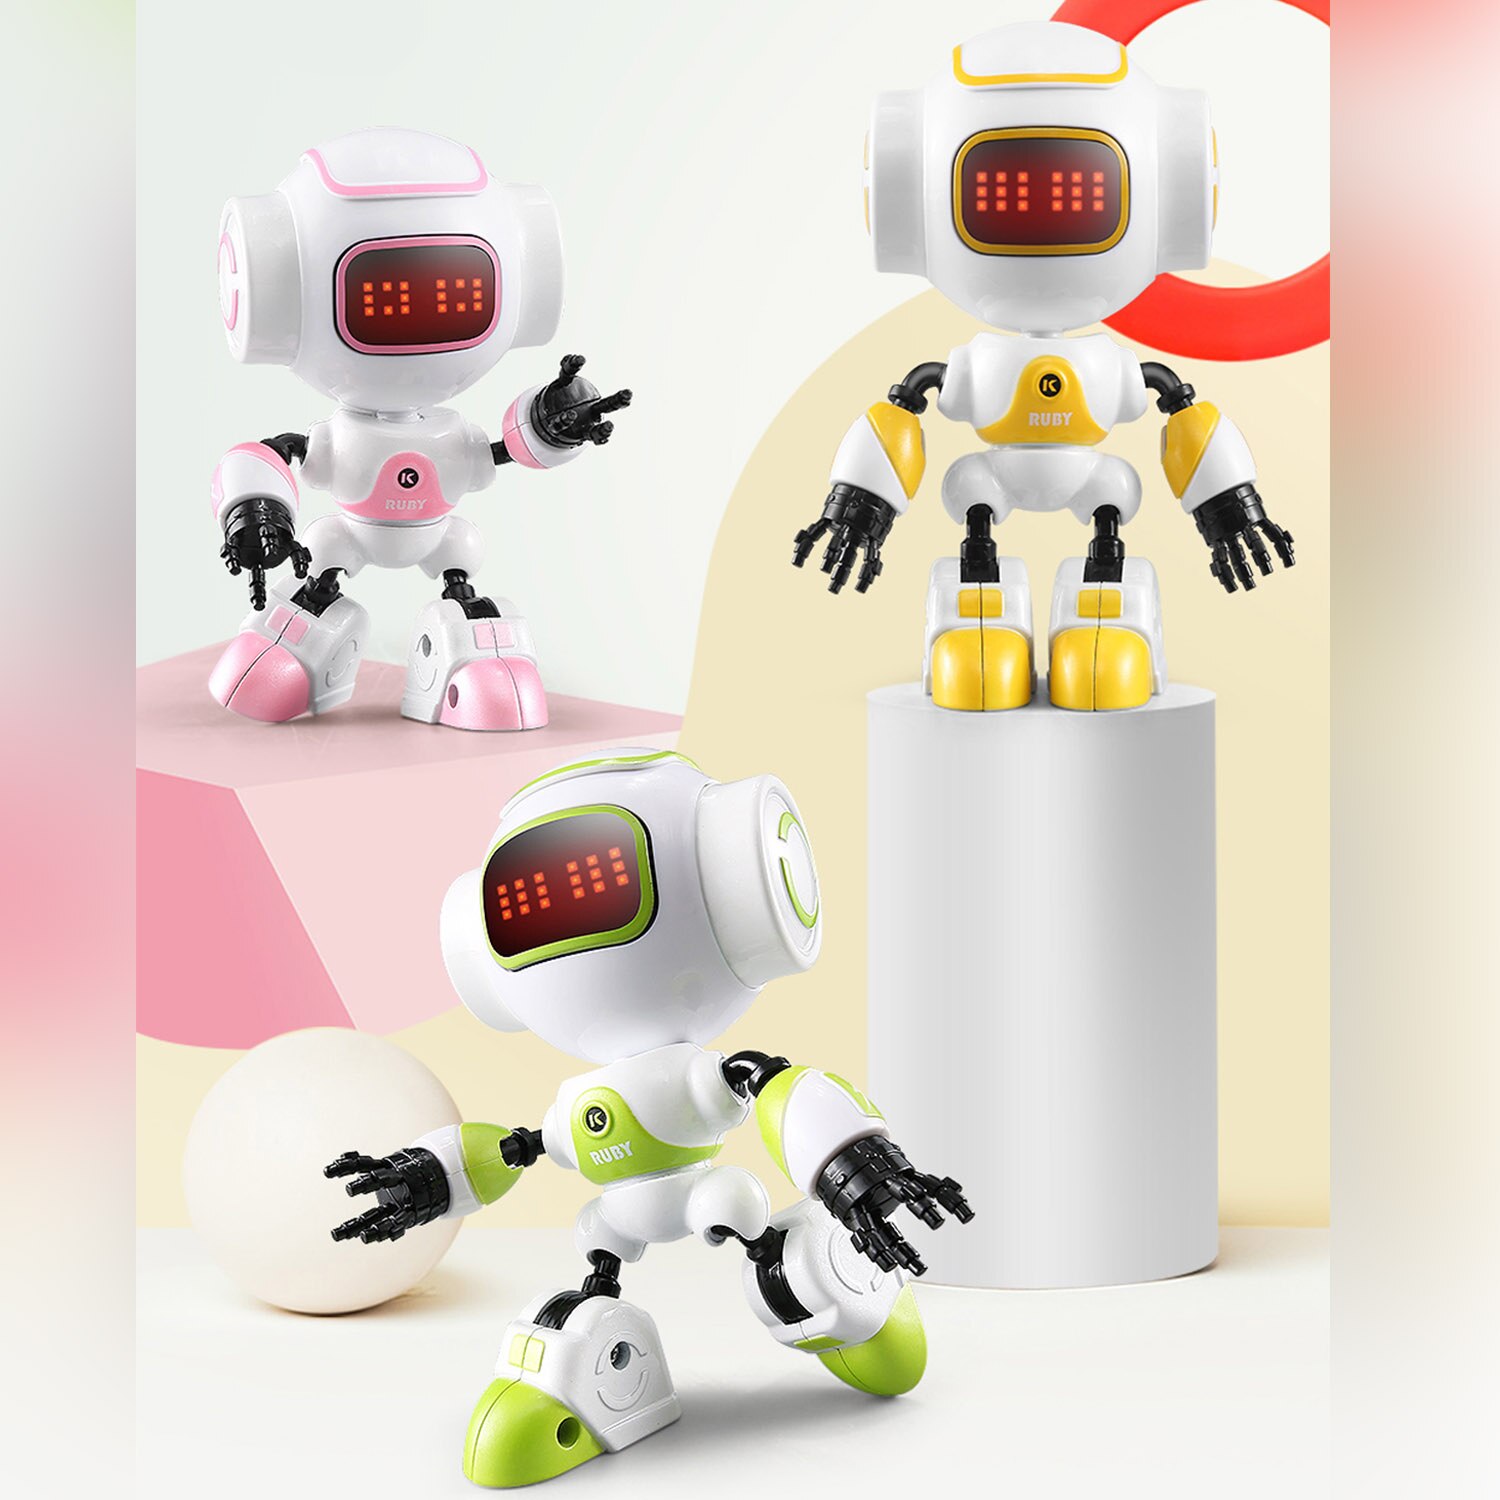 R9 Mini Leuke Robot Touch Sensing Model Speelgoed met LED Ogen Smart Voice DIY Gebaar Legering Body voor Kids Kinderen